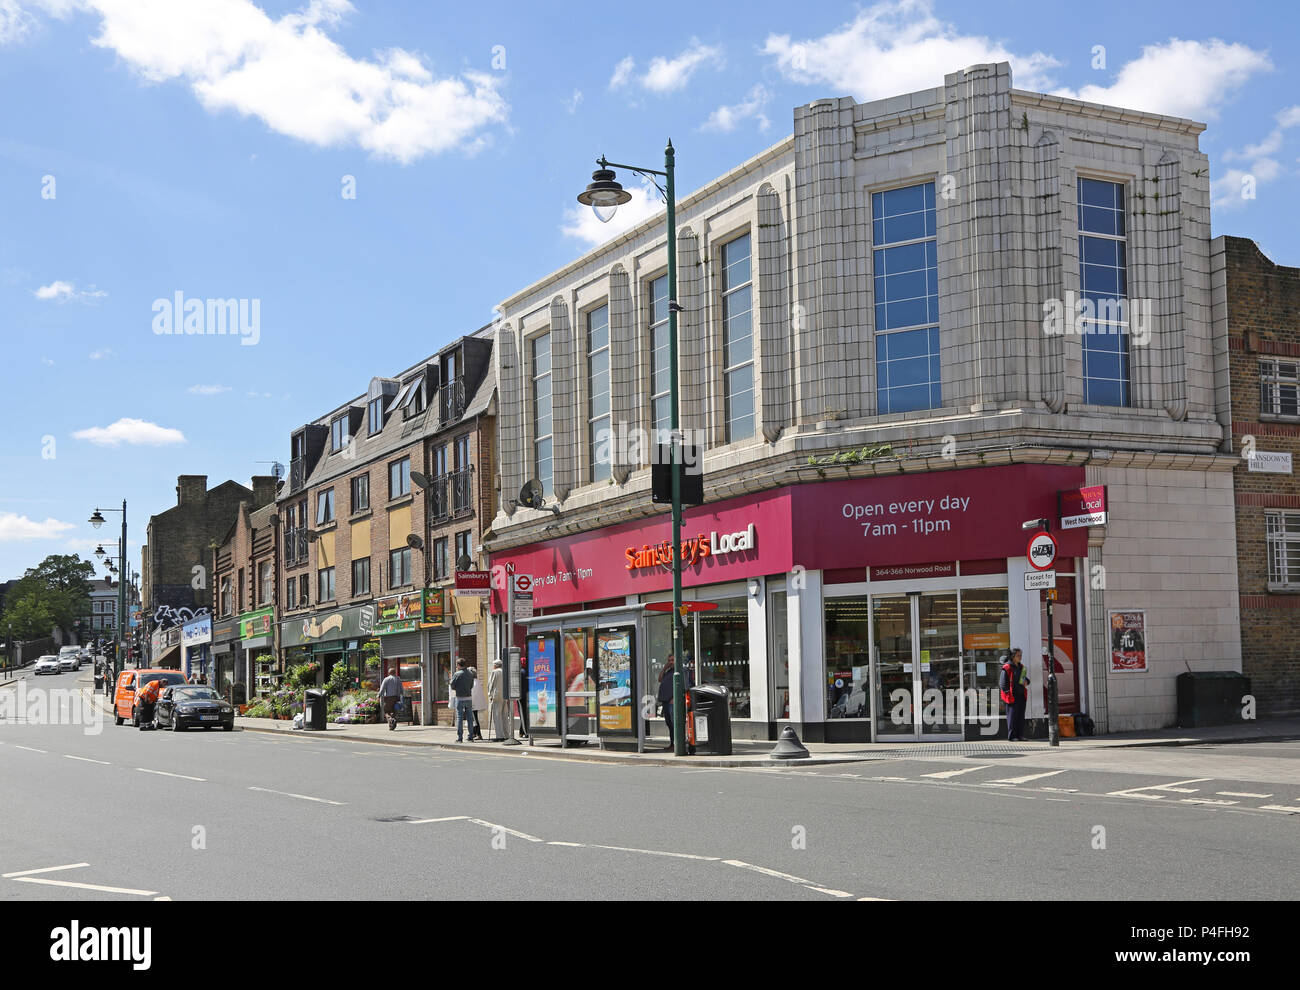 Norwood Road, South London, UK. Die Haupteinkaufsstraße in West Norwood. Zeigt Sainsbury's Store, Einkäufer und Verkehrsarmen in dieser geschäftigen Stadt. Stockfoto